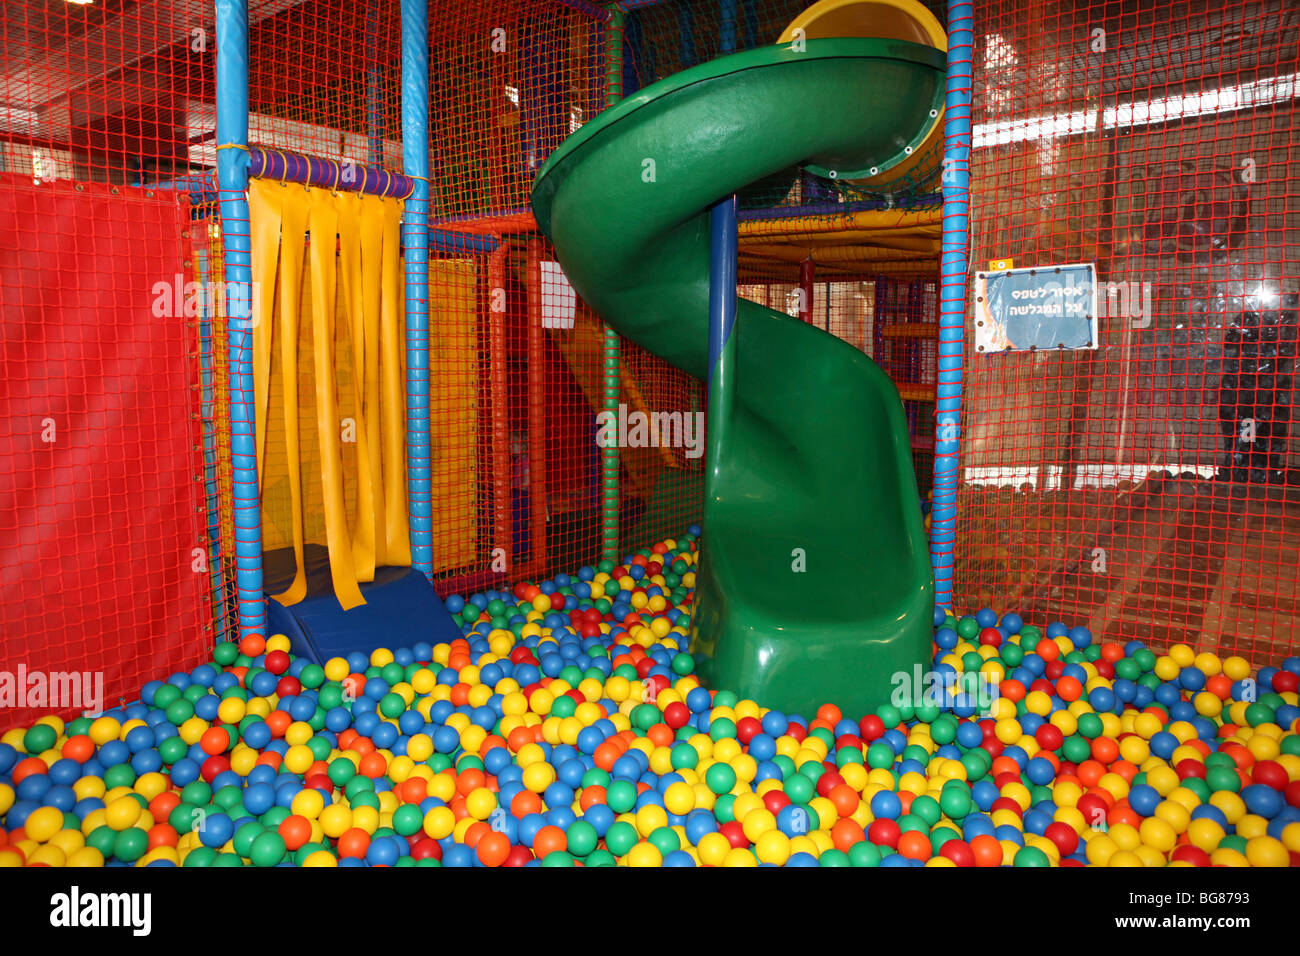 Indoor Kinderspielplatz Rutsche in eine leere Bällebad Stockfotografie -  Alamy